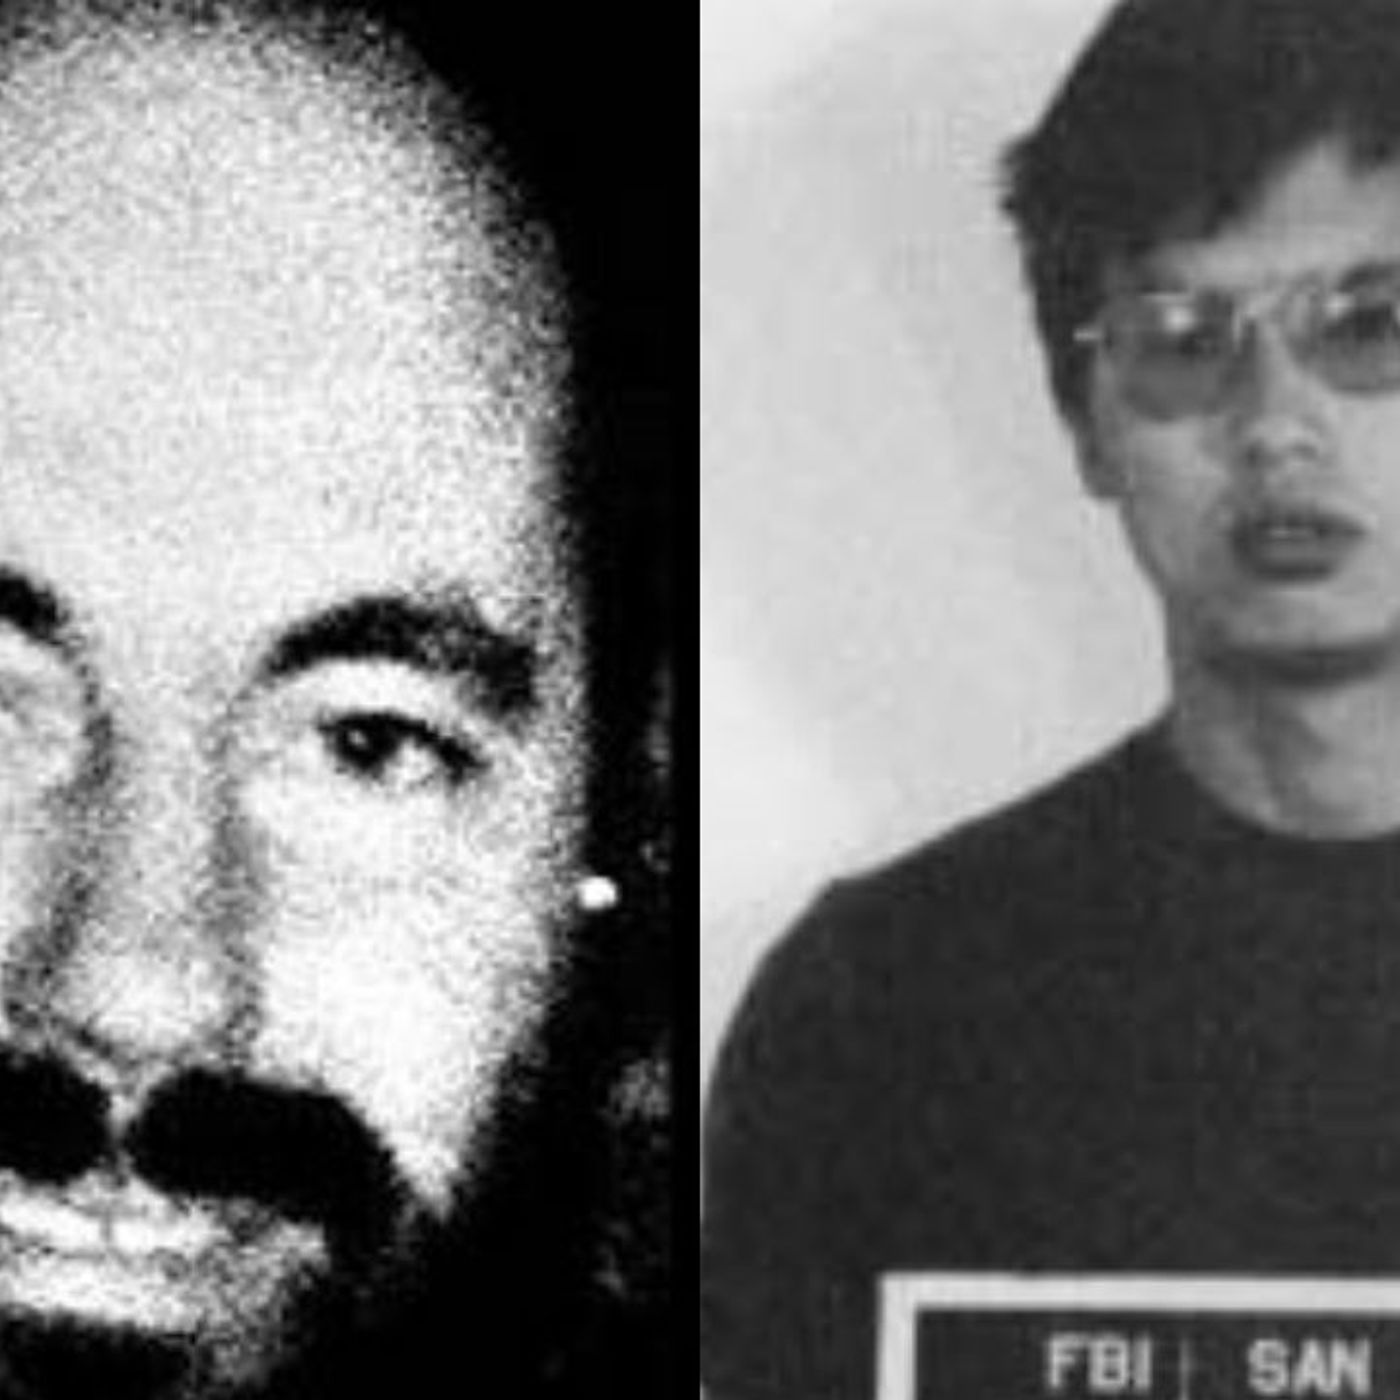 196 Tag Team Leonard Lake and Charles Ng, Part 2 Corpus Delicti